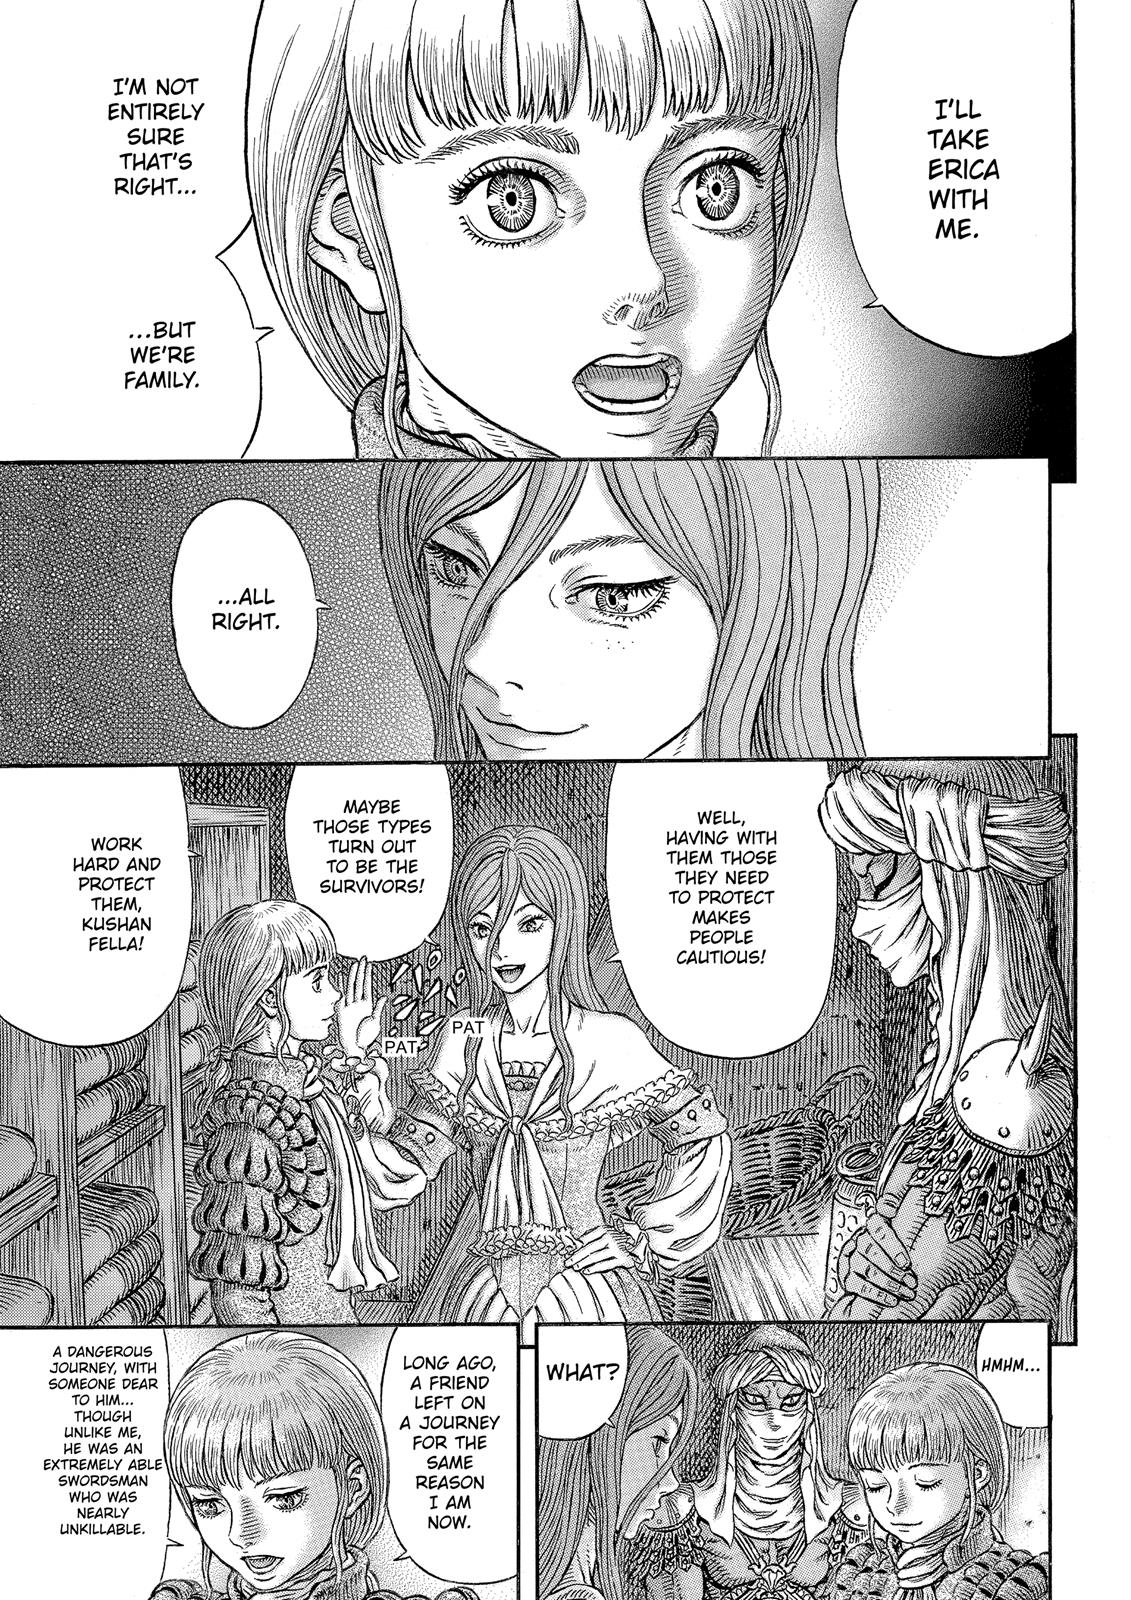 Berserk Manga Chapter 339 image 20